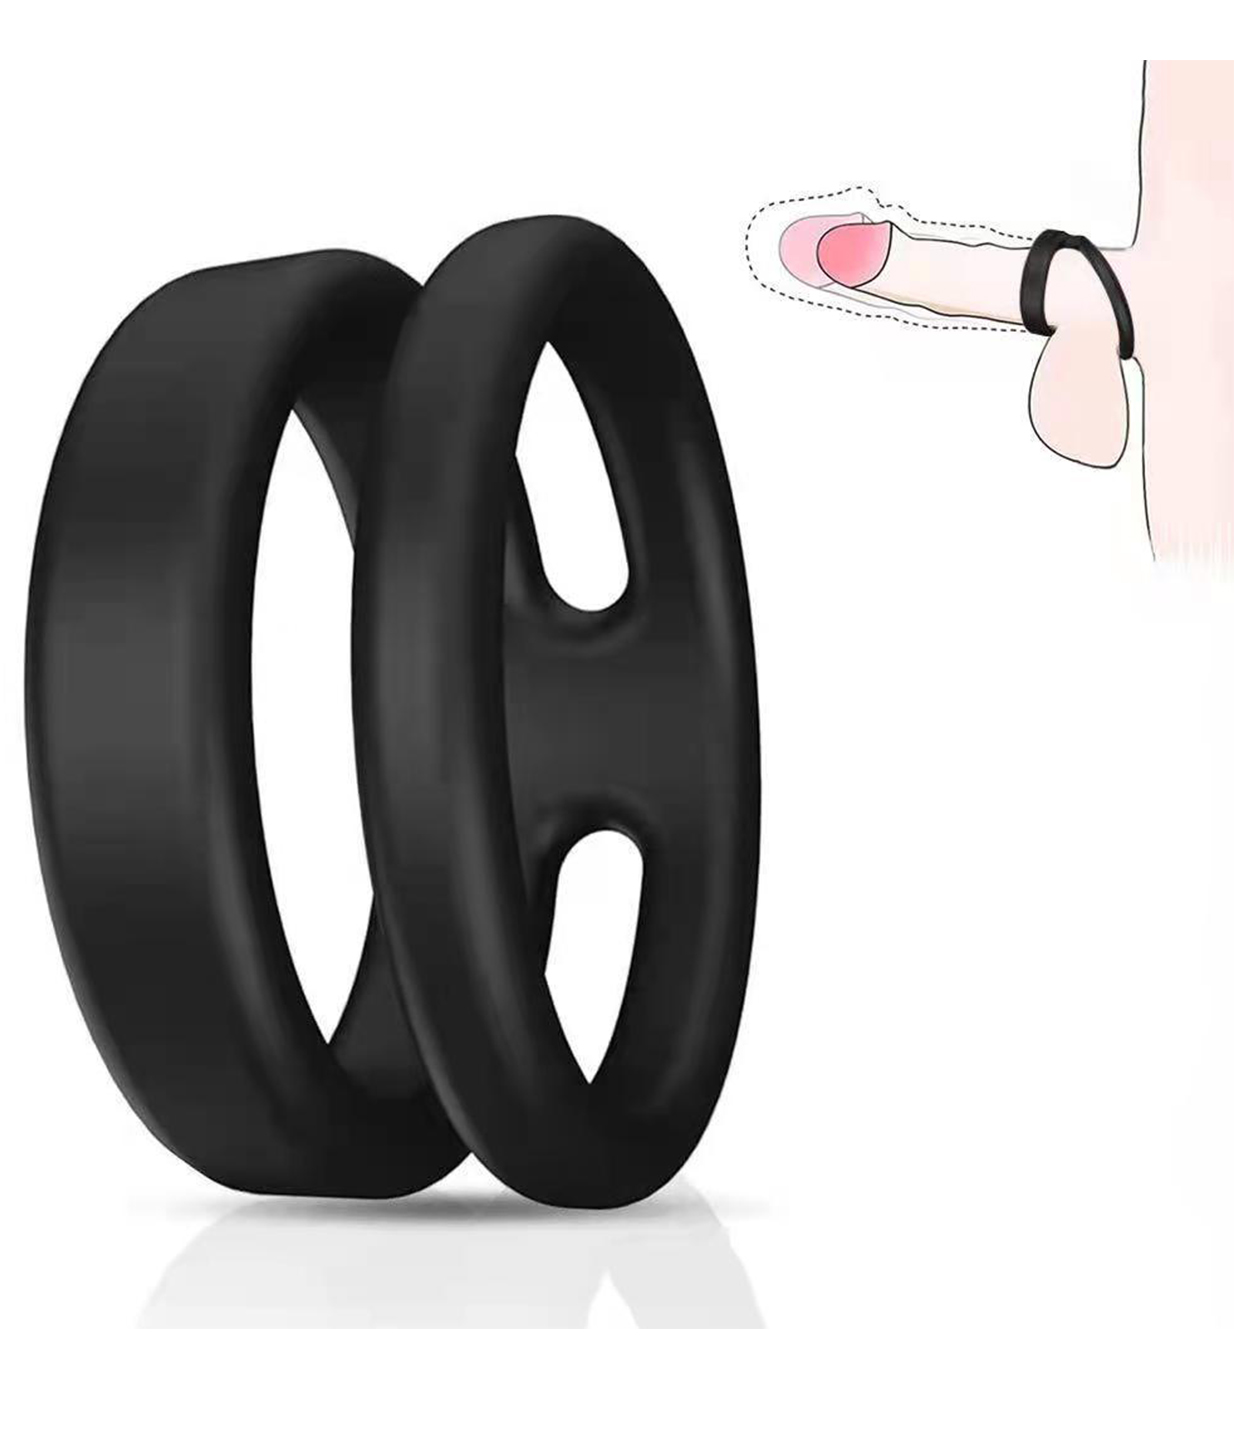 Vibrating Penis Ring (1)